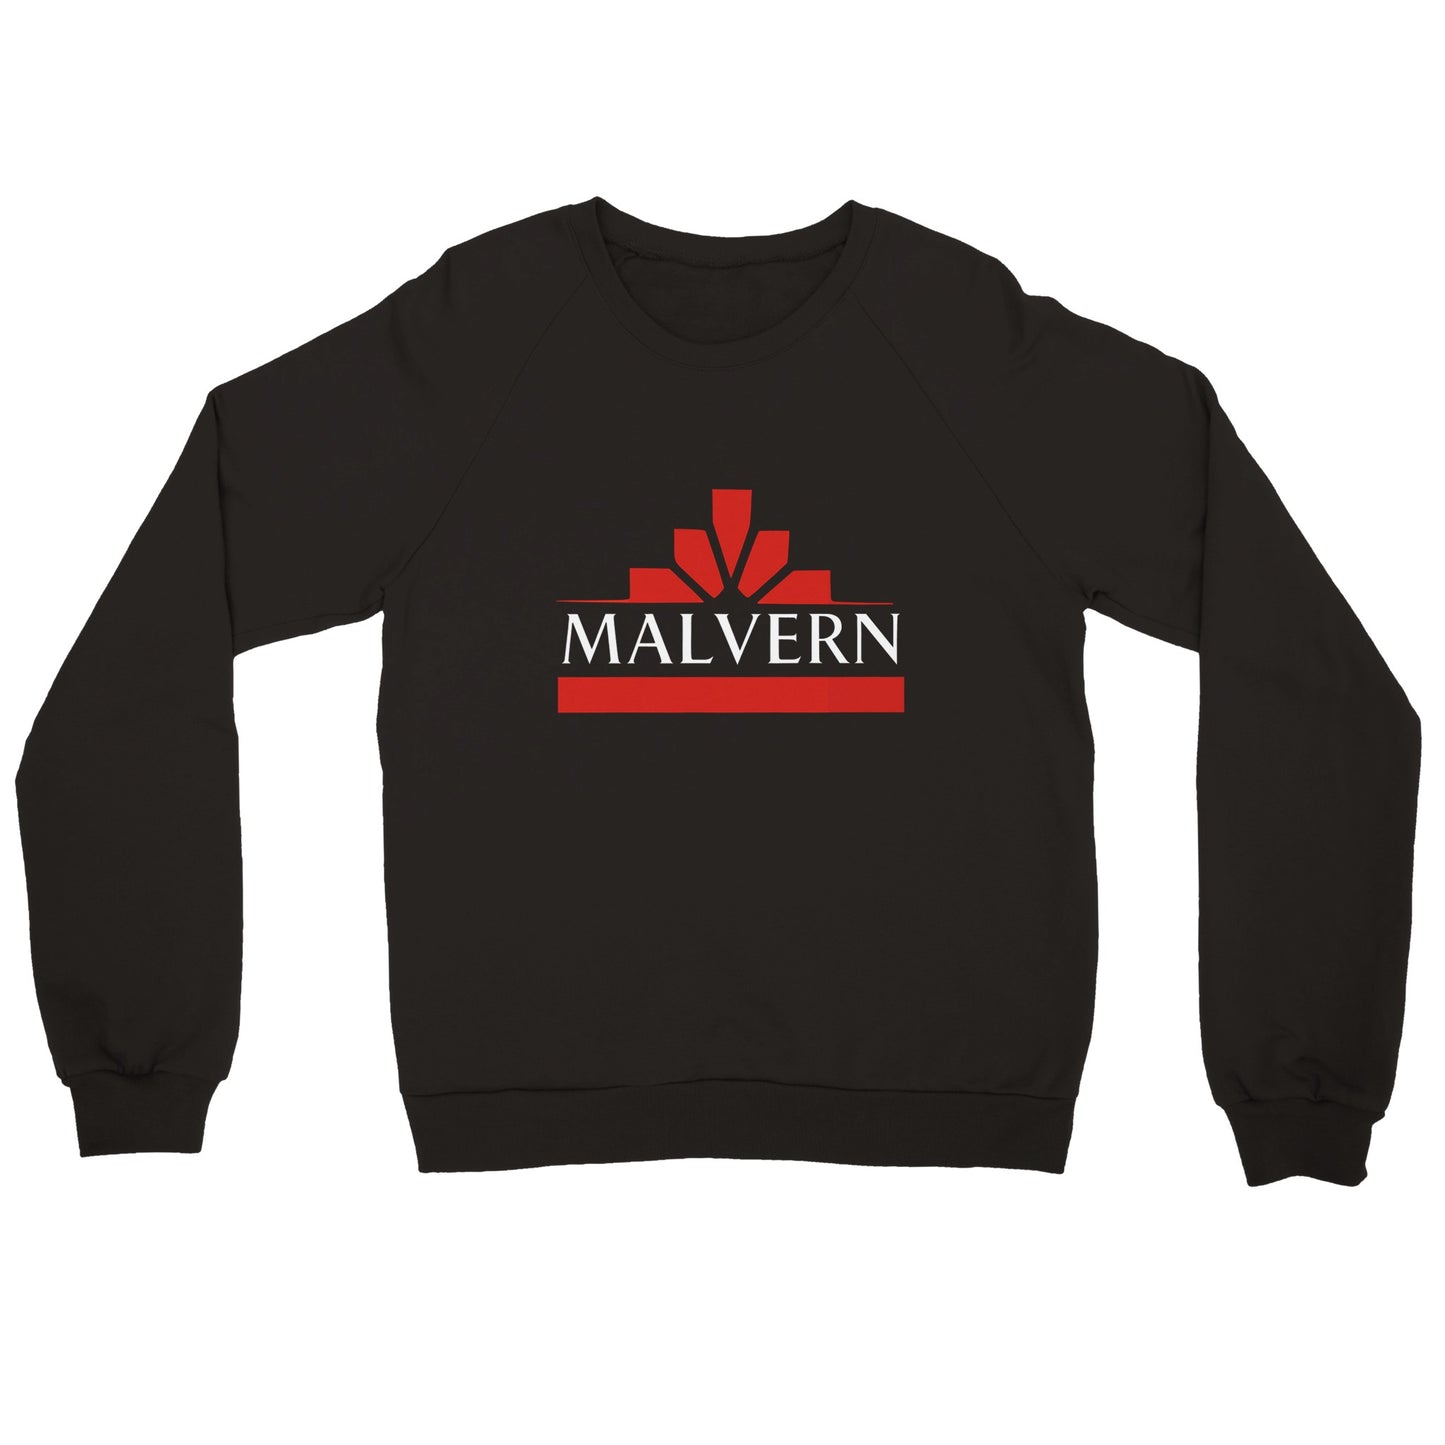 "Retro Malvern TC" Premium Unisex Crewneck Sweatshirt